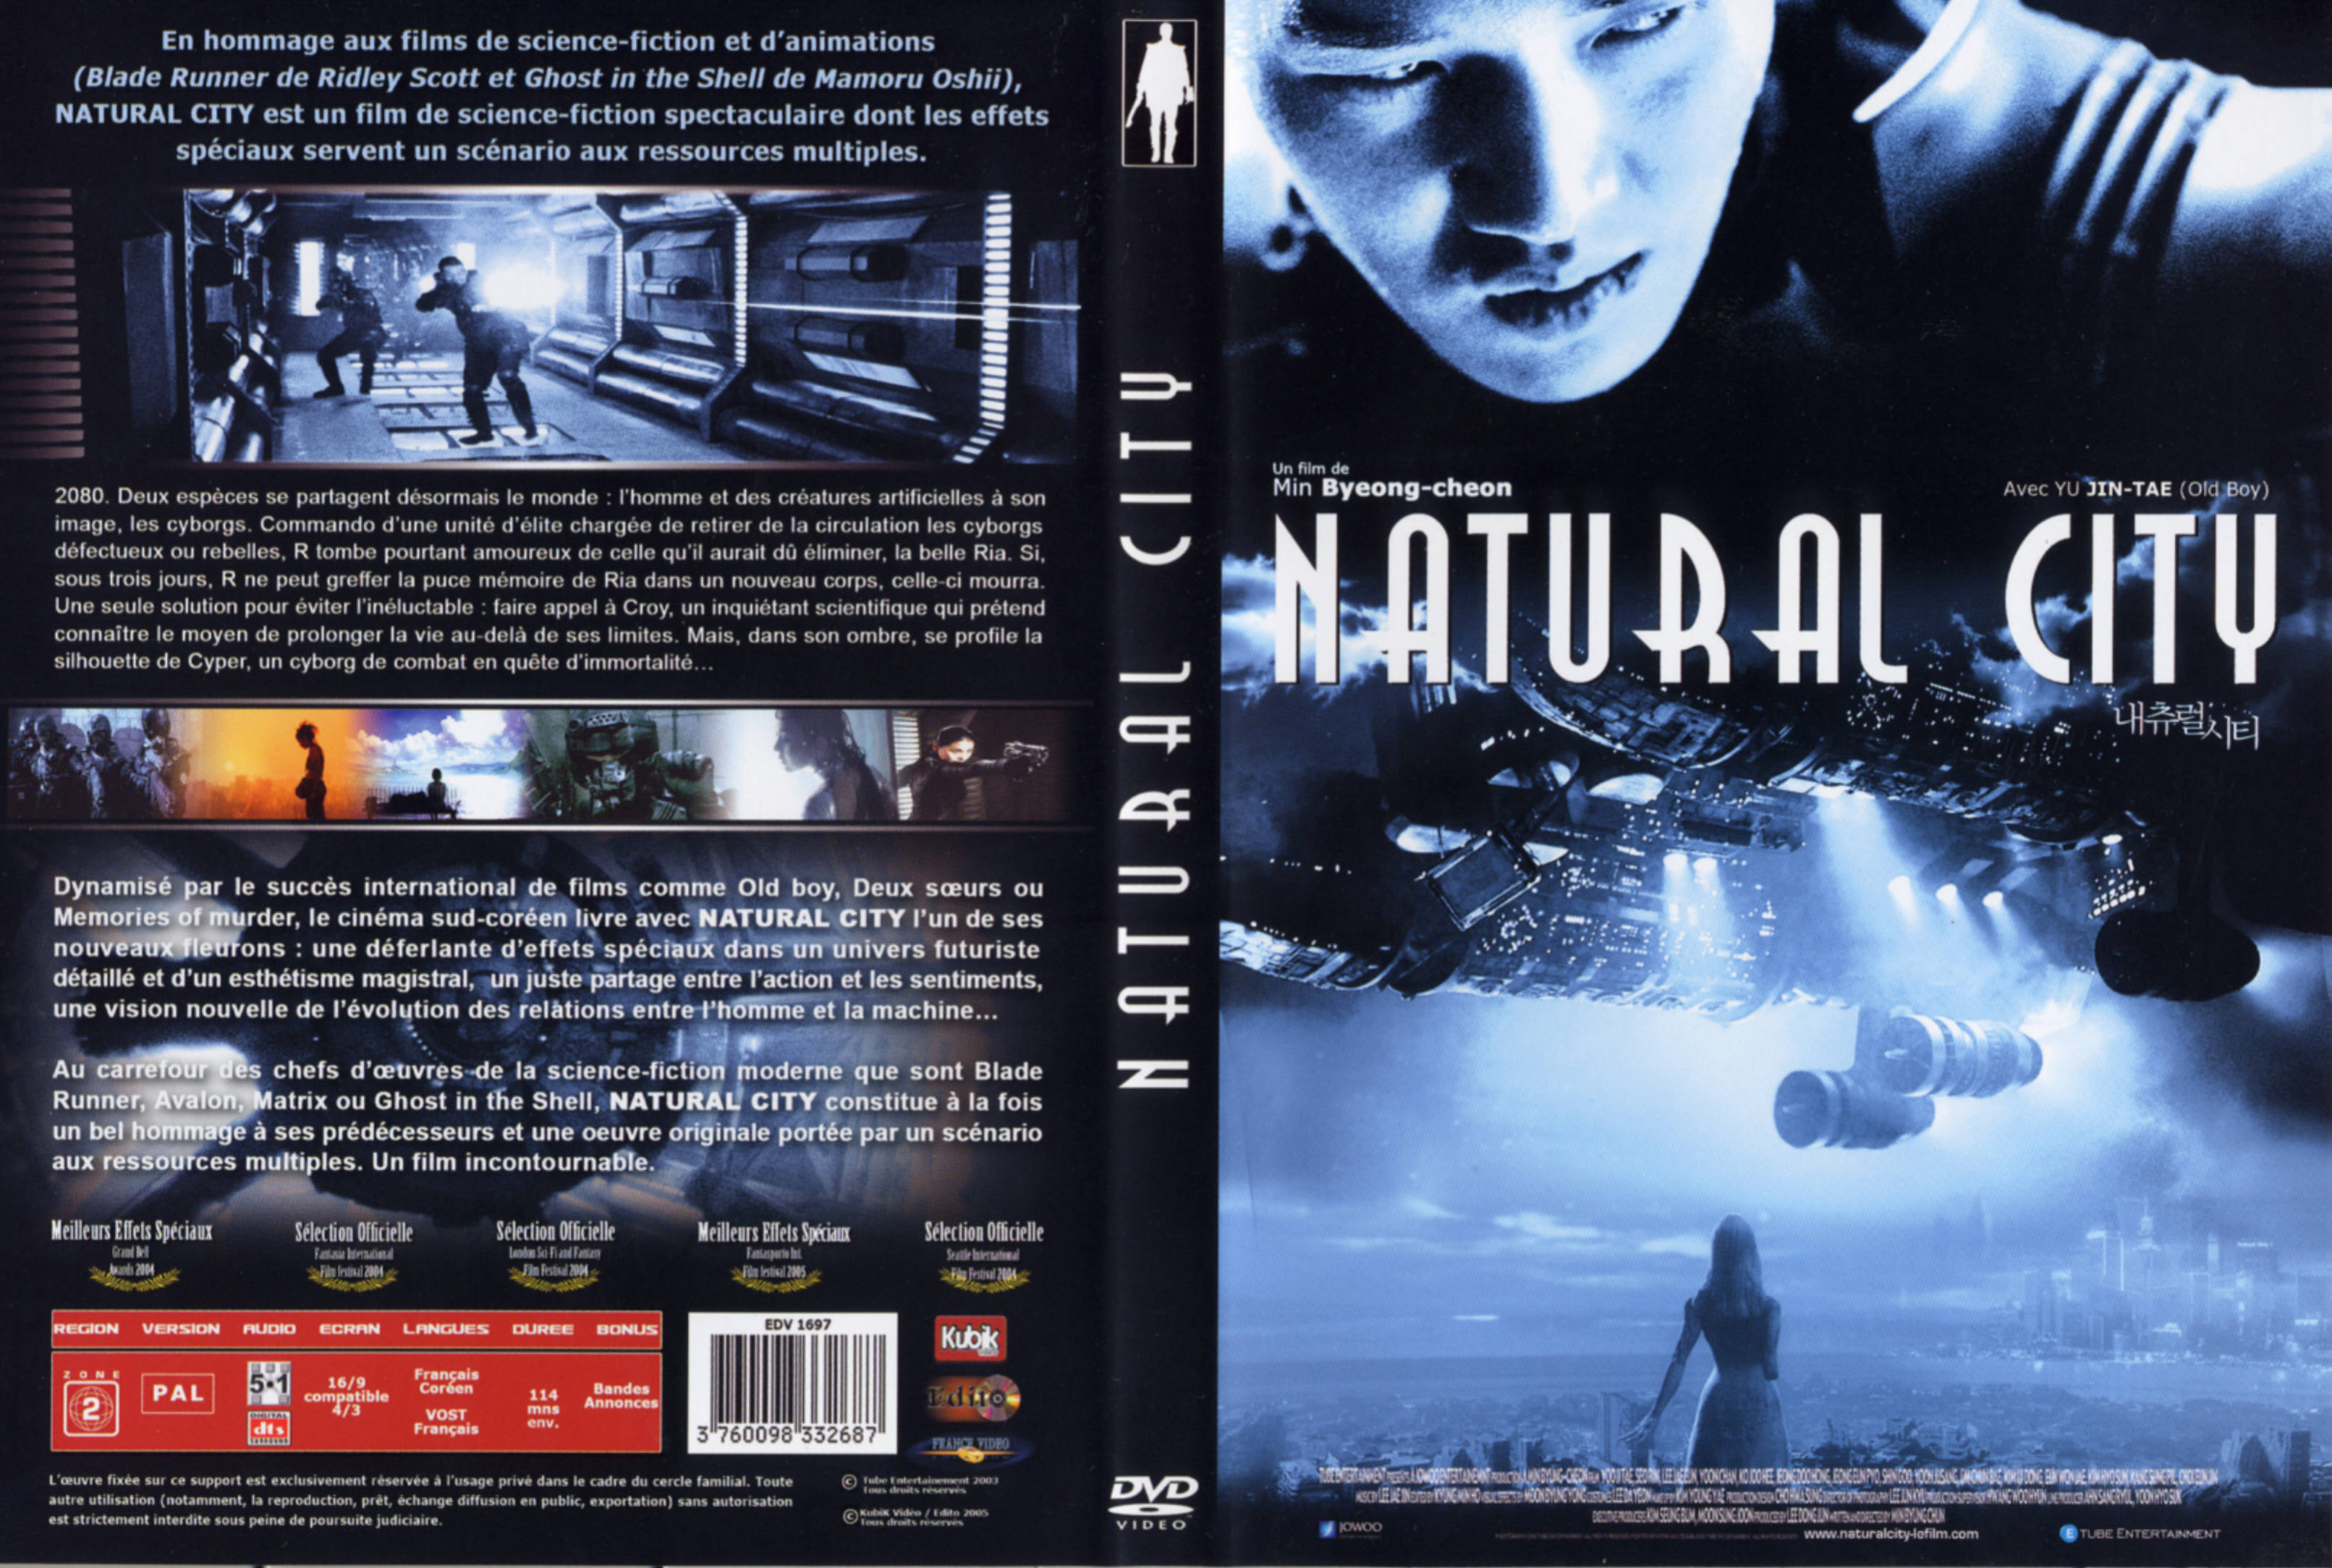 Jaquette DVD Natural city v2